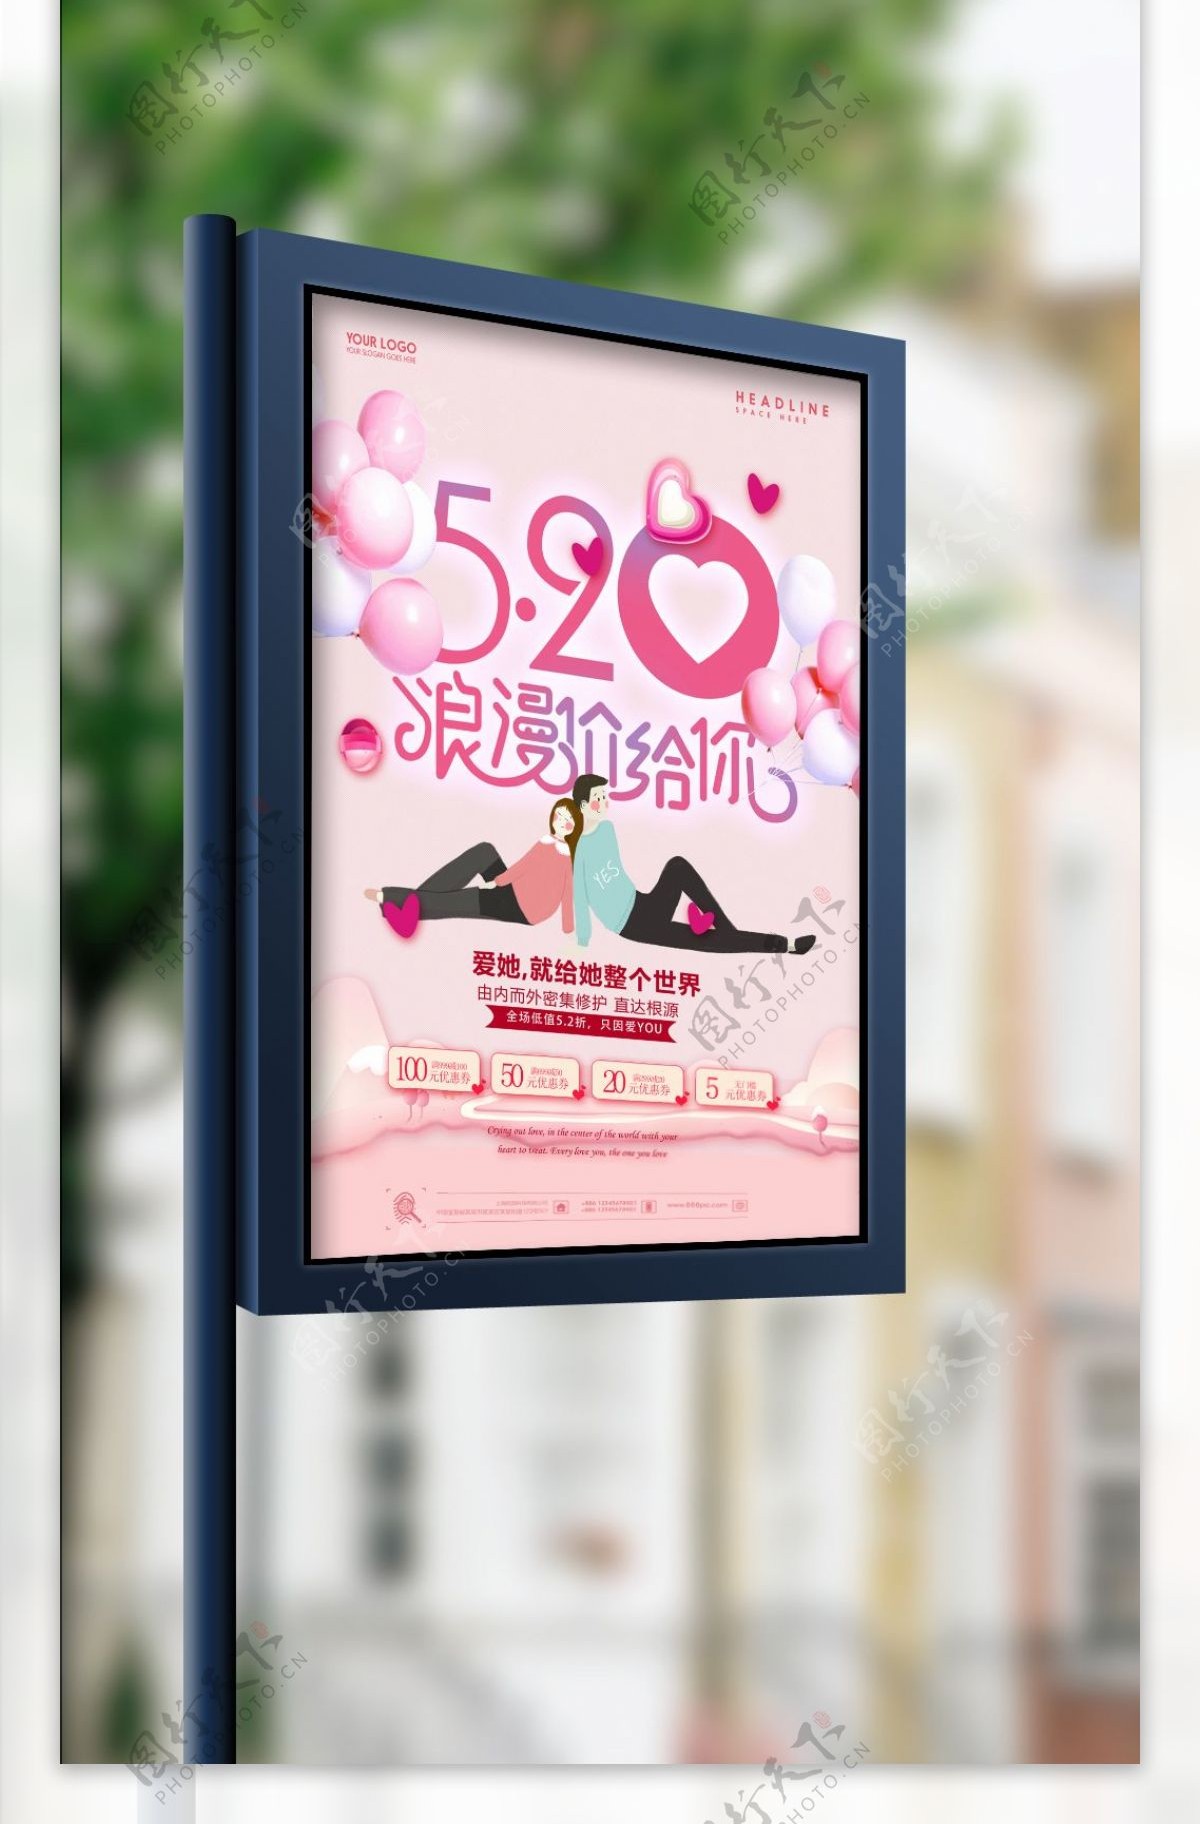 粉色520浪漫价给你海报设计